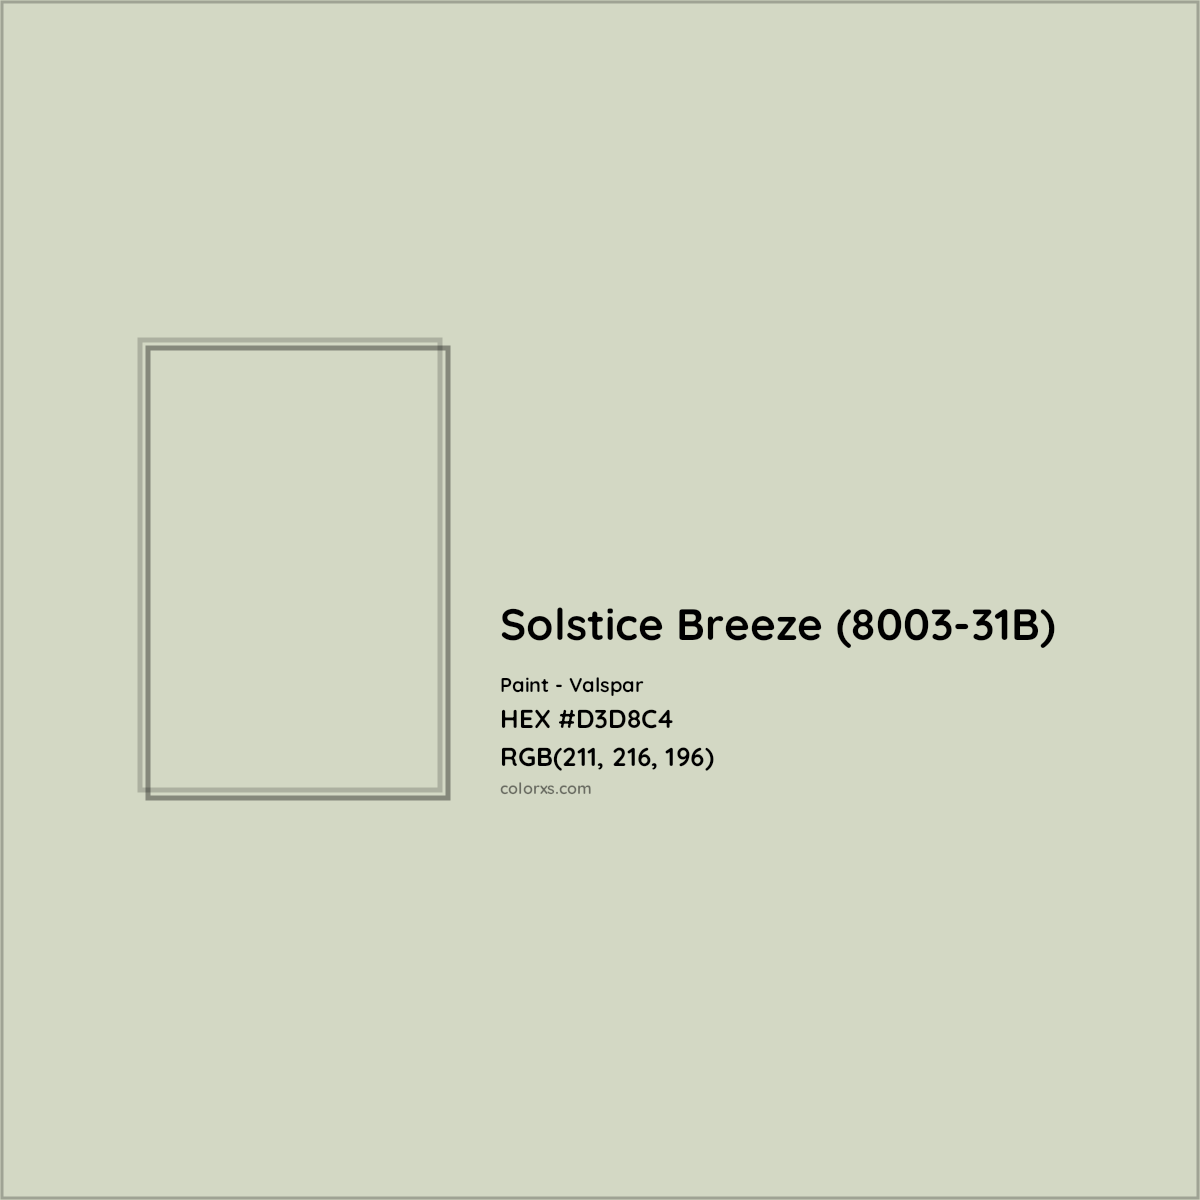 HEX #D3D8C4 Solstice Breeze (8003-31B) Paint Valspar - Color Code